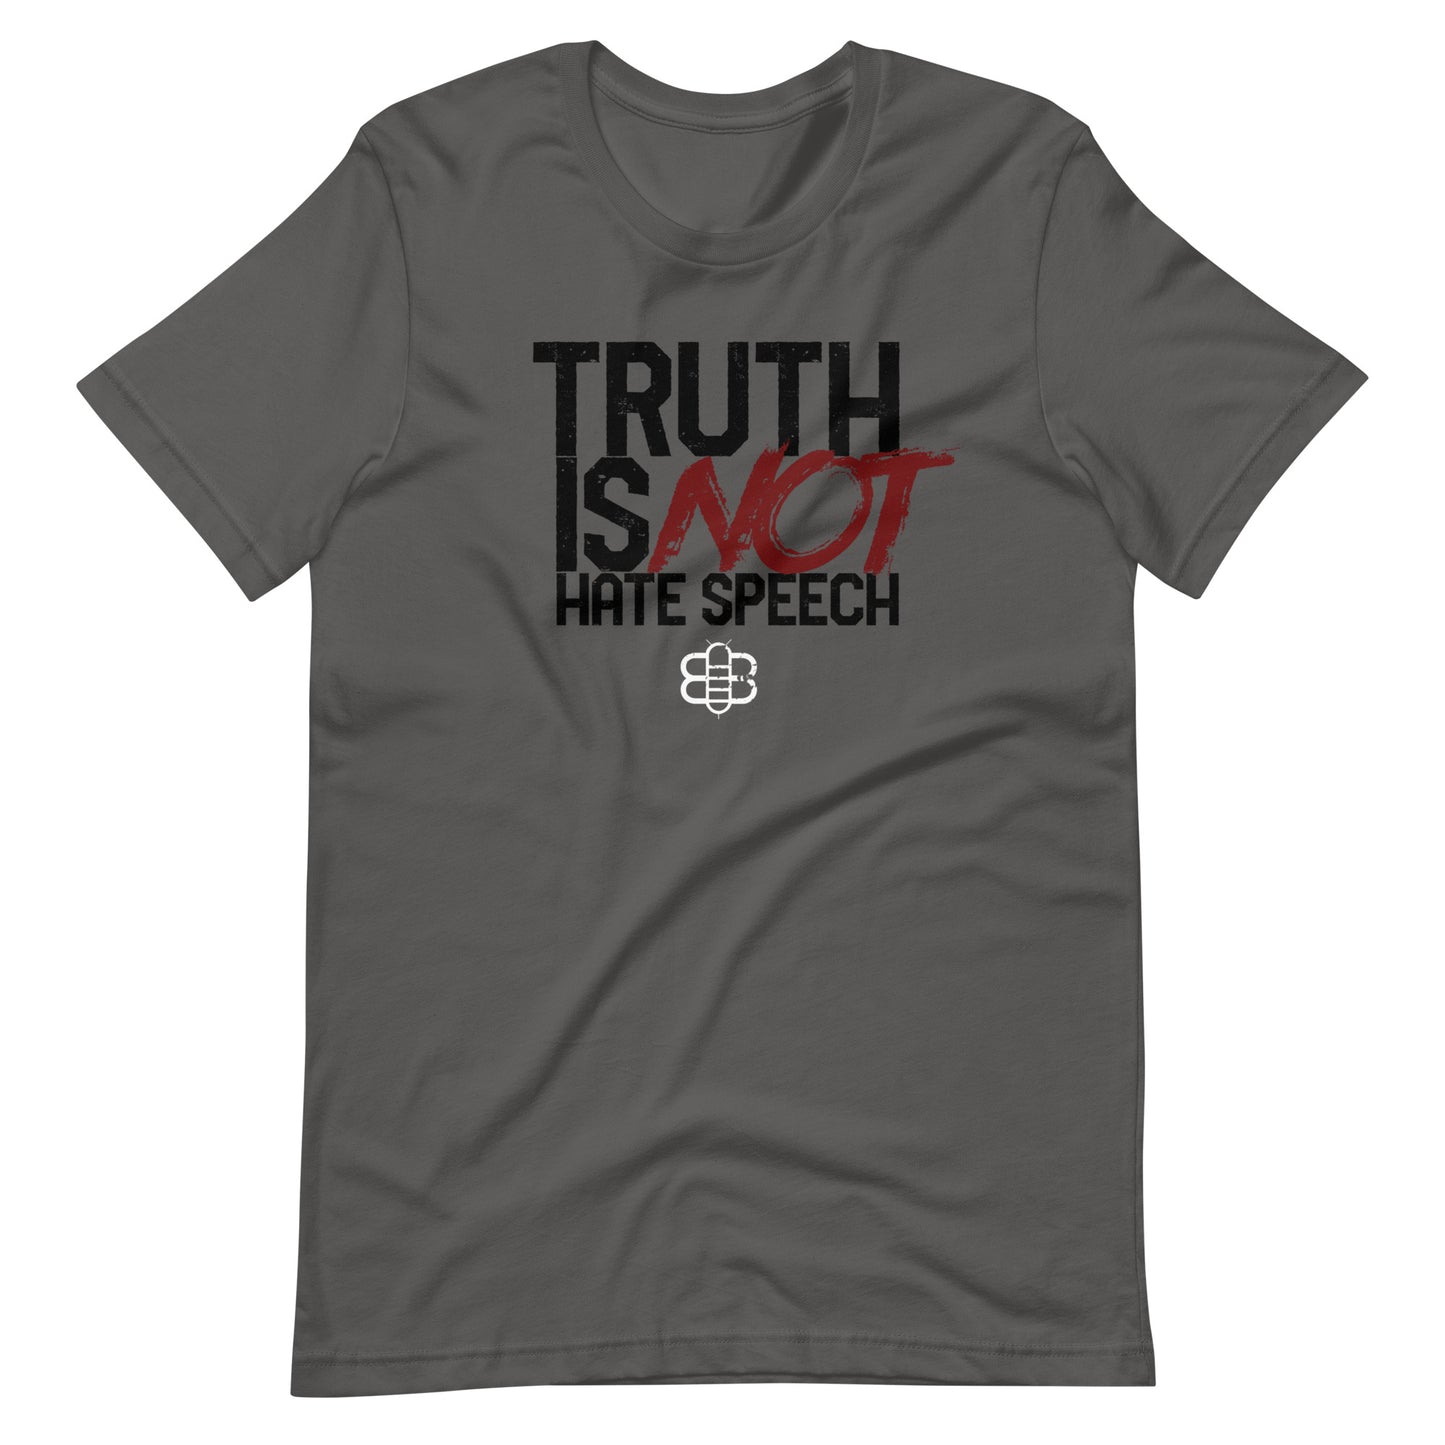 Truth ≠ Hate Speech T-shirt